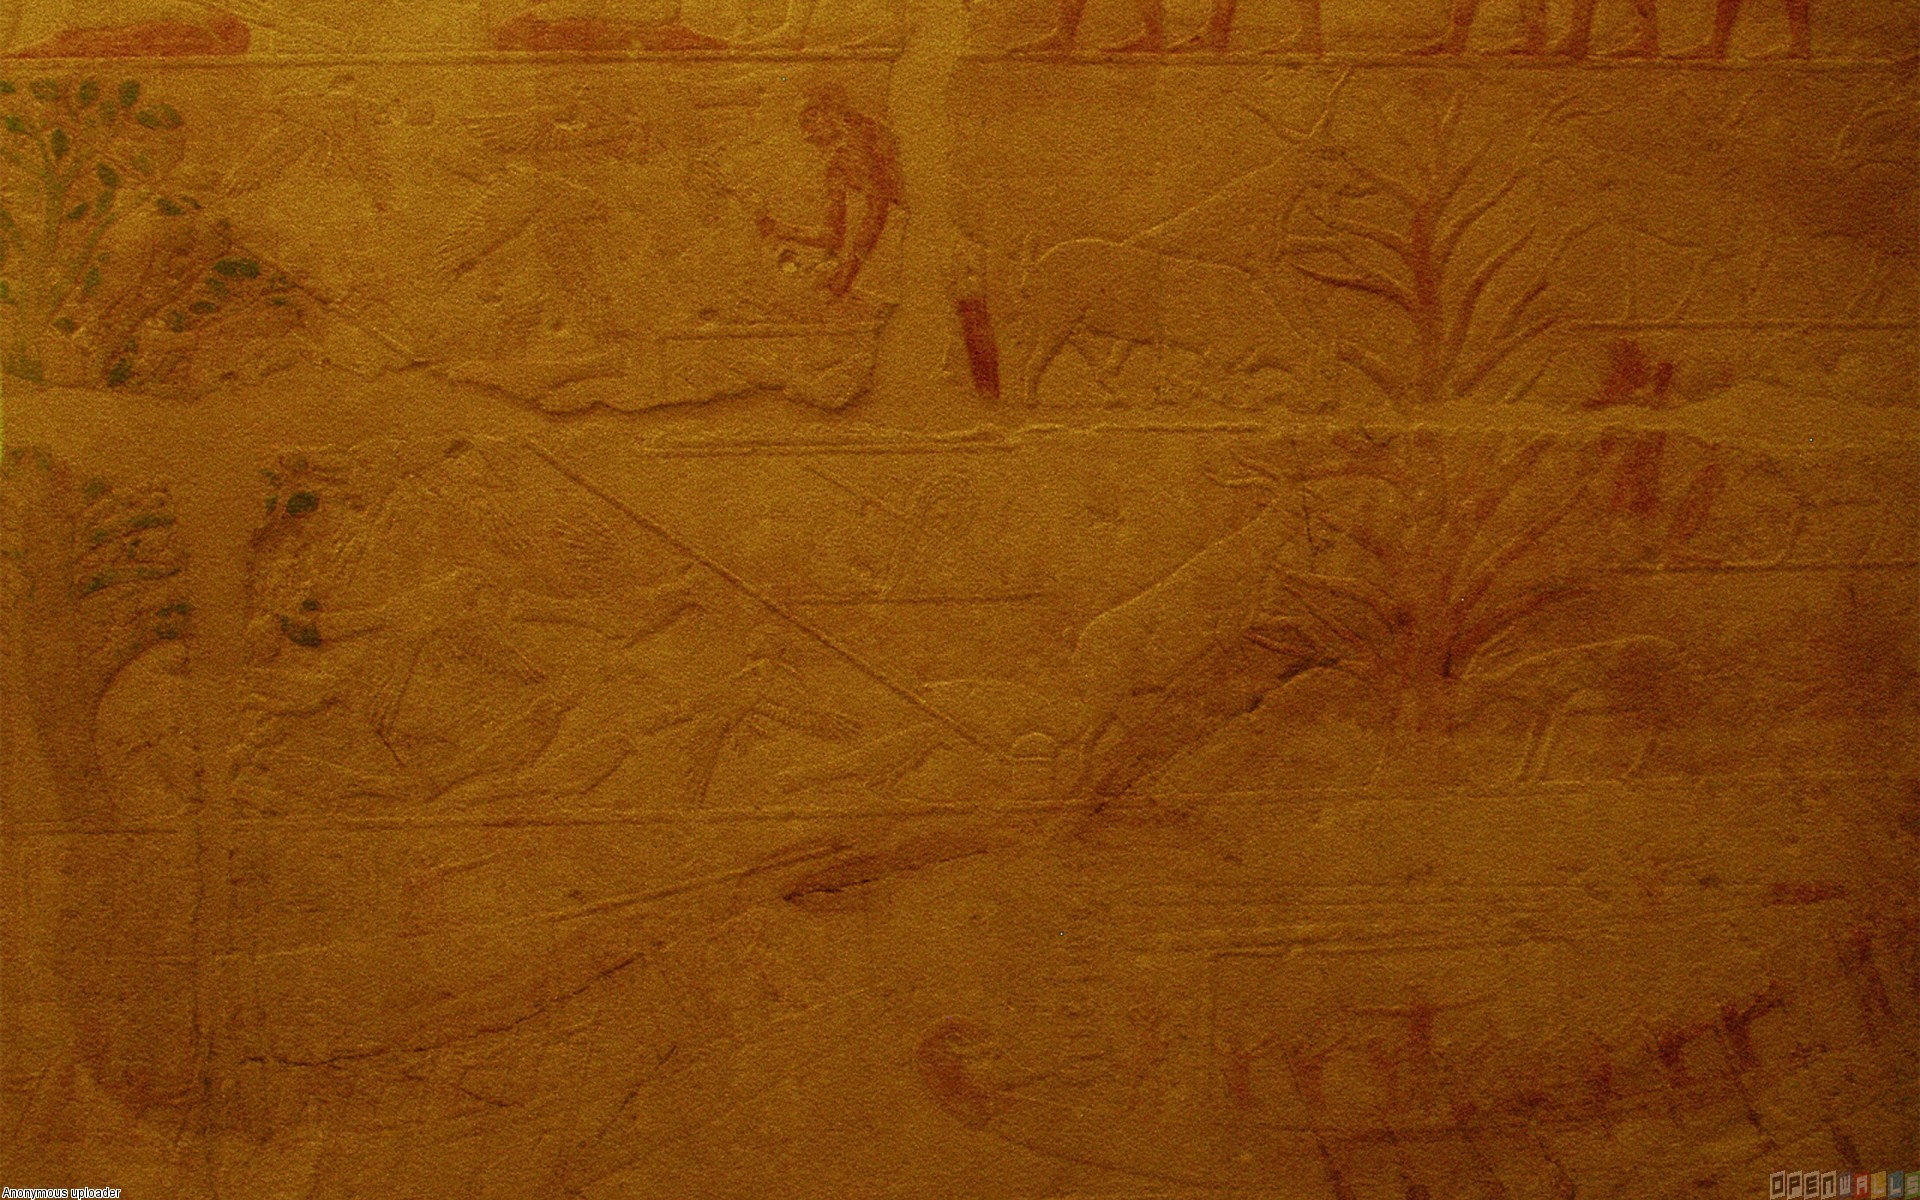 1920x1200 Ancient egypt wallpaper #2771 - Open Walls